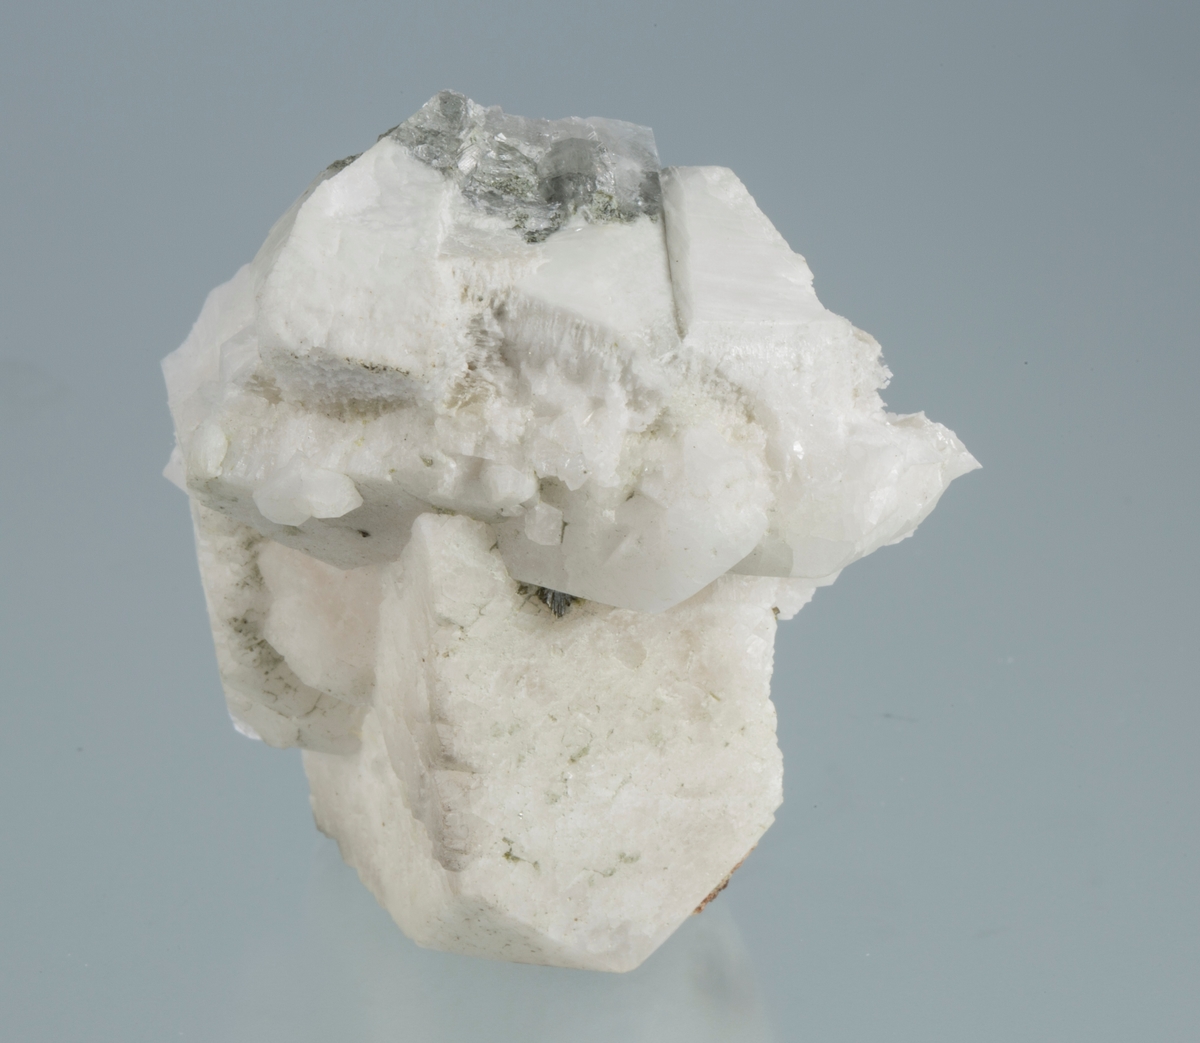 Stor krystall
Fra Samuel
Vekt: 57,29 g
Størrelse: 3,5 x 3,4 x 2,3 cm

FSN: Stor apofyllitt. FSN.